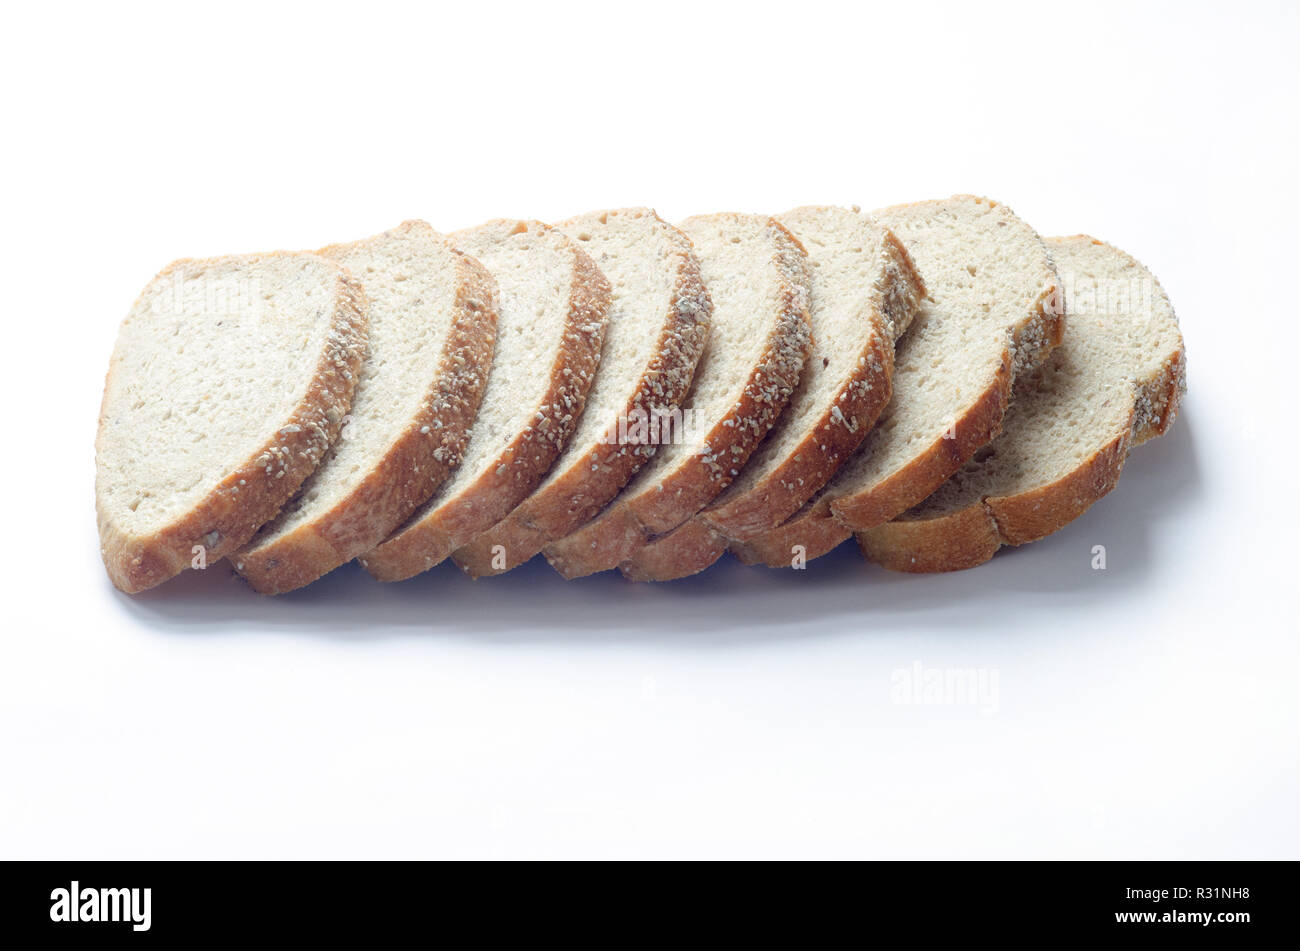 Volet Toscan Grains anciens des tranches de pain fait avec du blé entier et de l'épeautre, farines de céréales entières et de graines de lin on white Banque D'Images